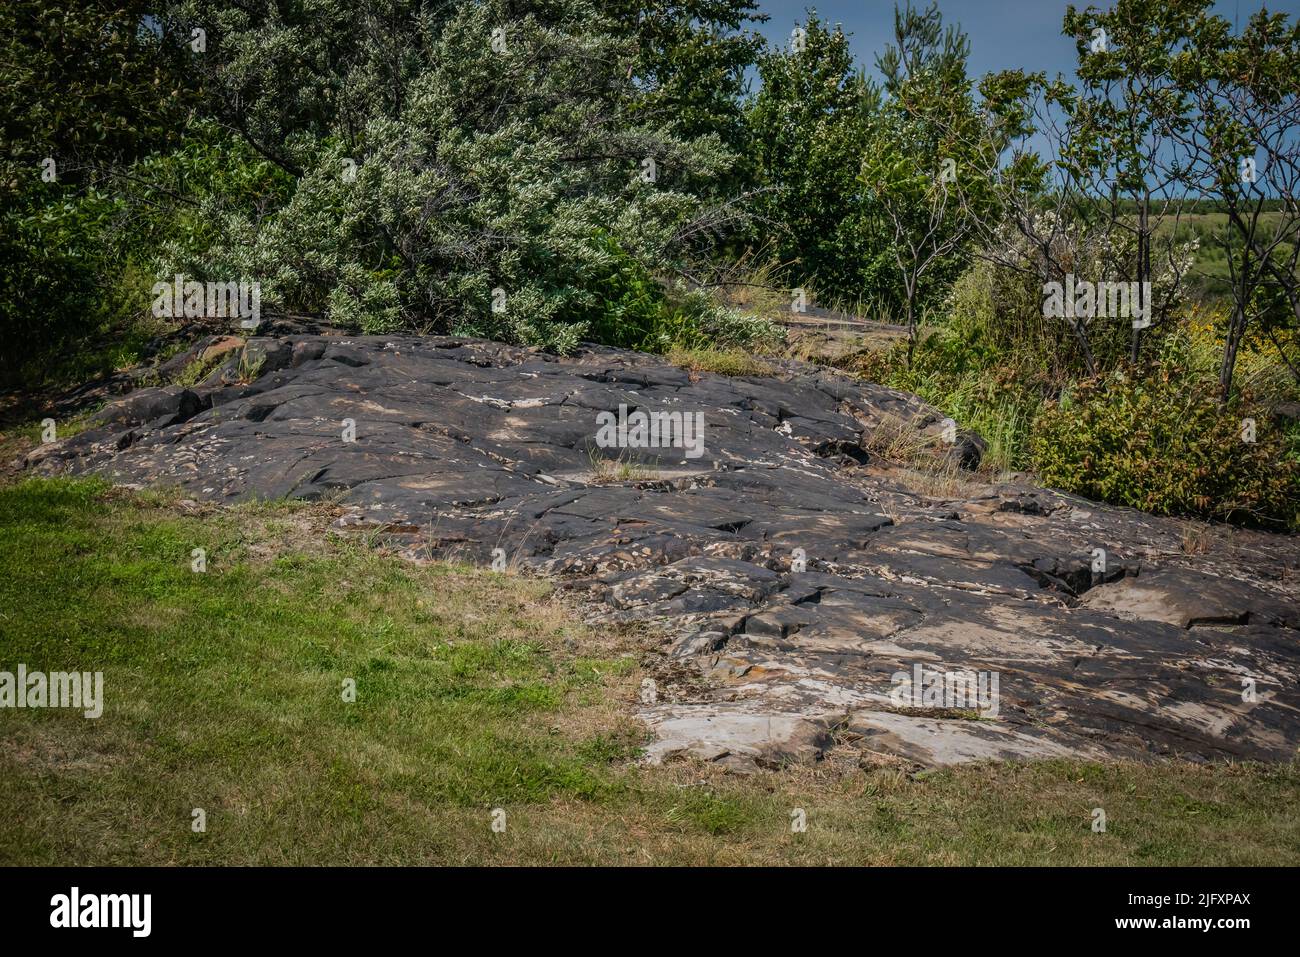 Rochers noirs à Sudbury, Ontario, Canada. Les roches ont été tachées noires par les premières émissions de la fonderie, qui contenaient du dioxyde de soufre et des particules métalliques Banque D'Images